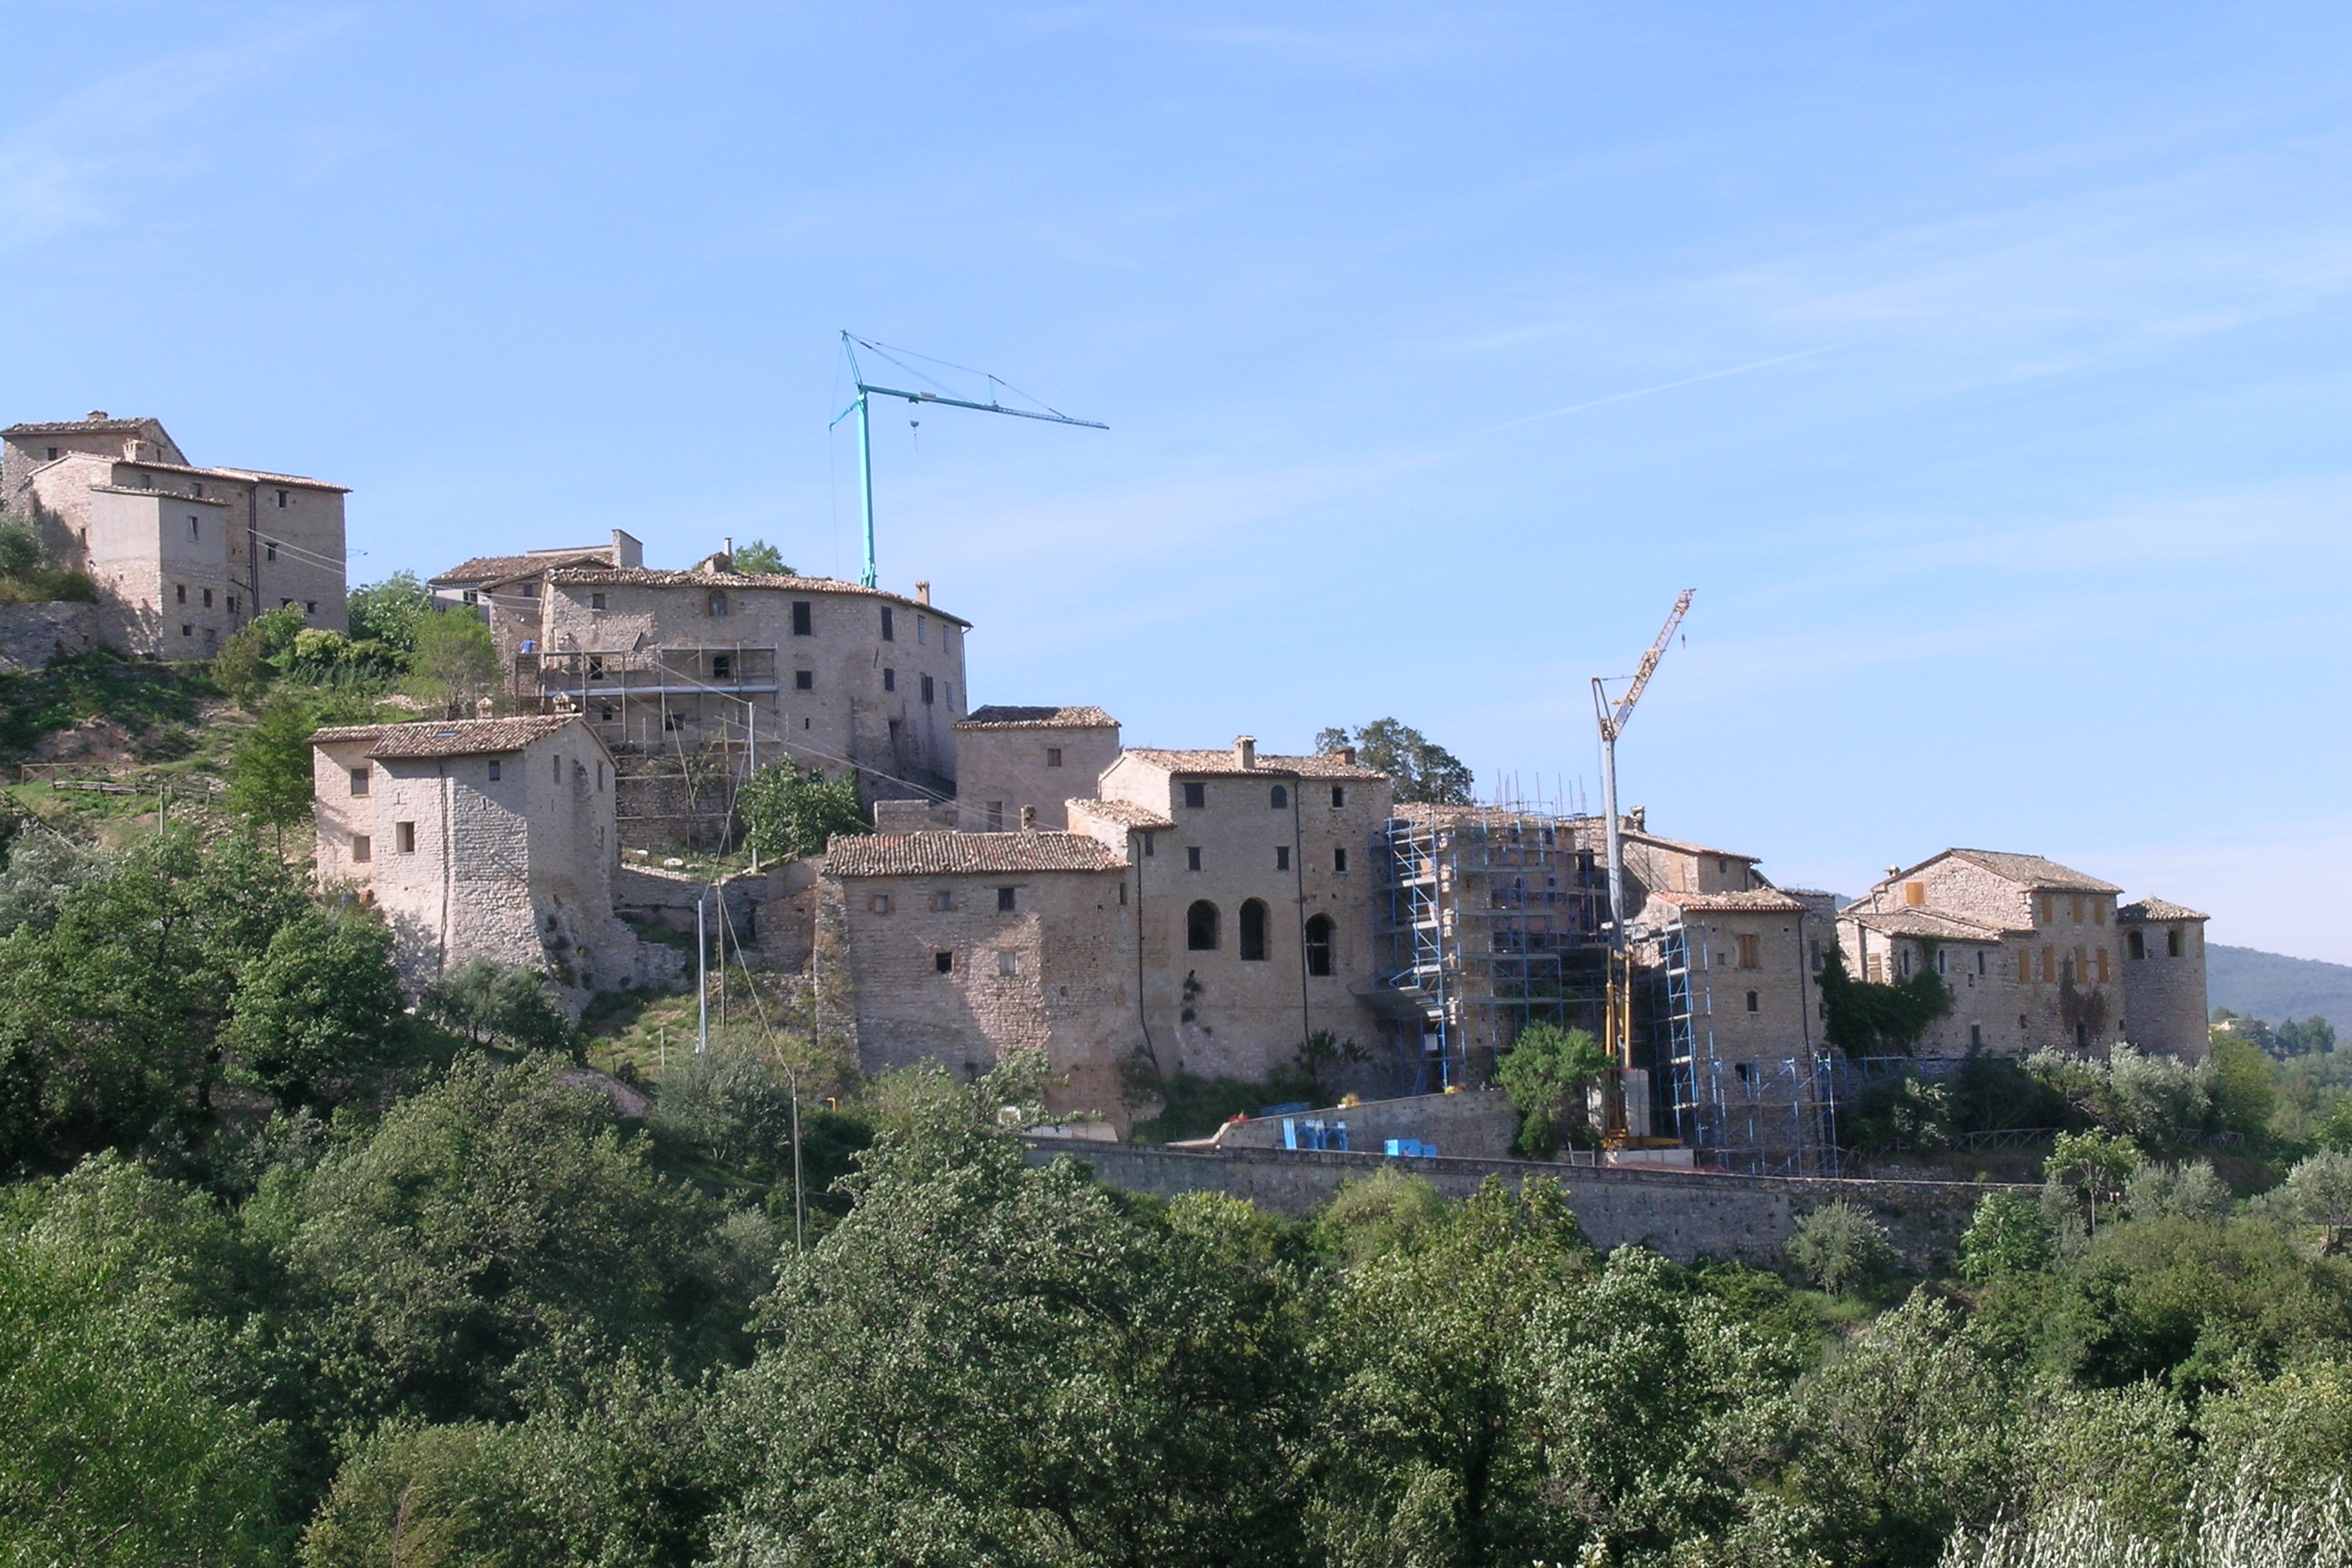 Torrione del Castello di Vestignano (torrione, del castello) - Caldarola (MC) 